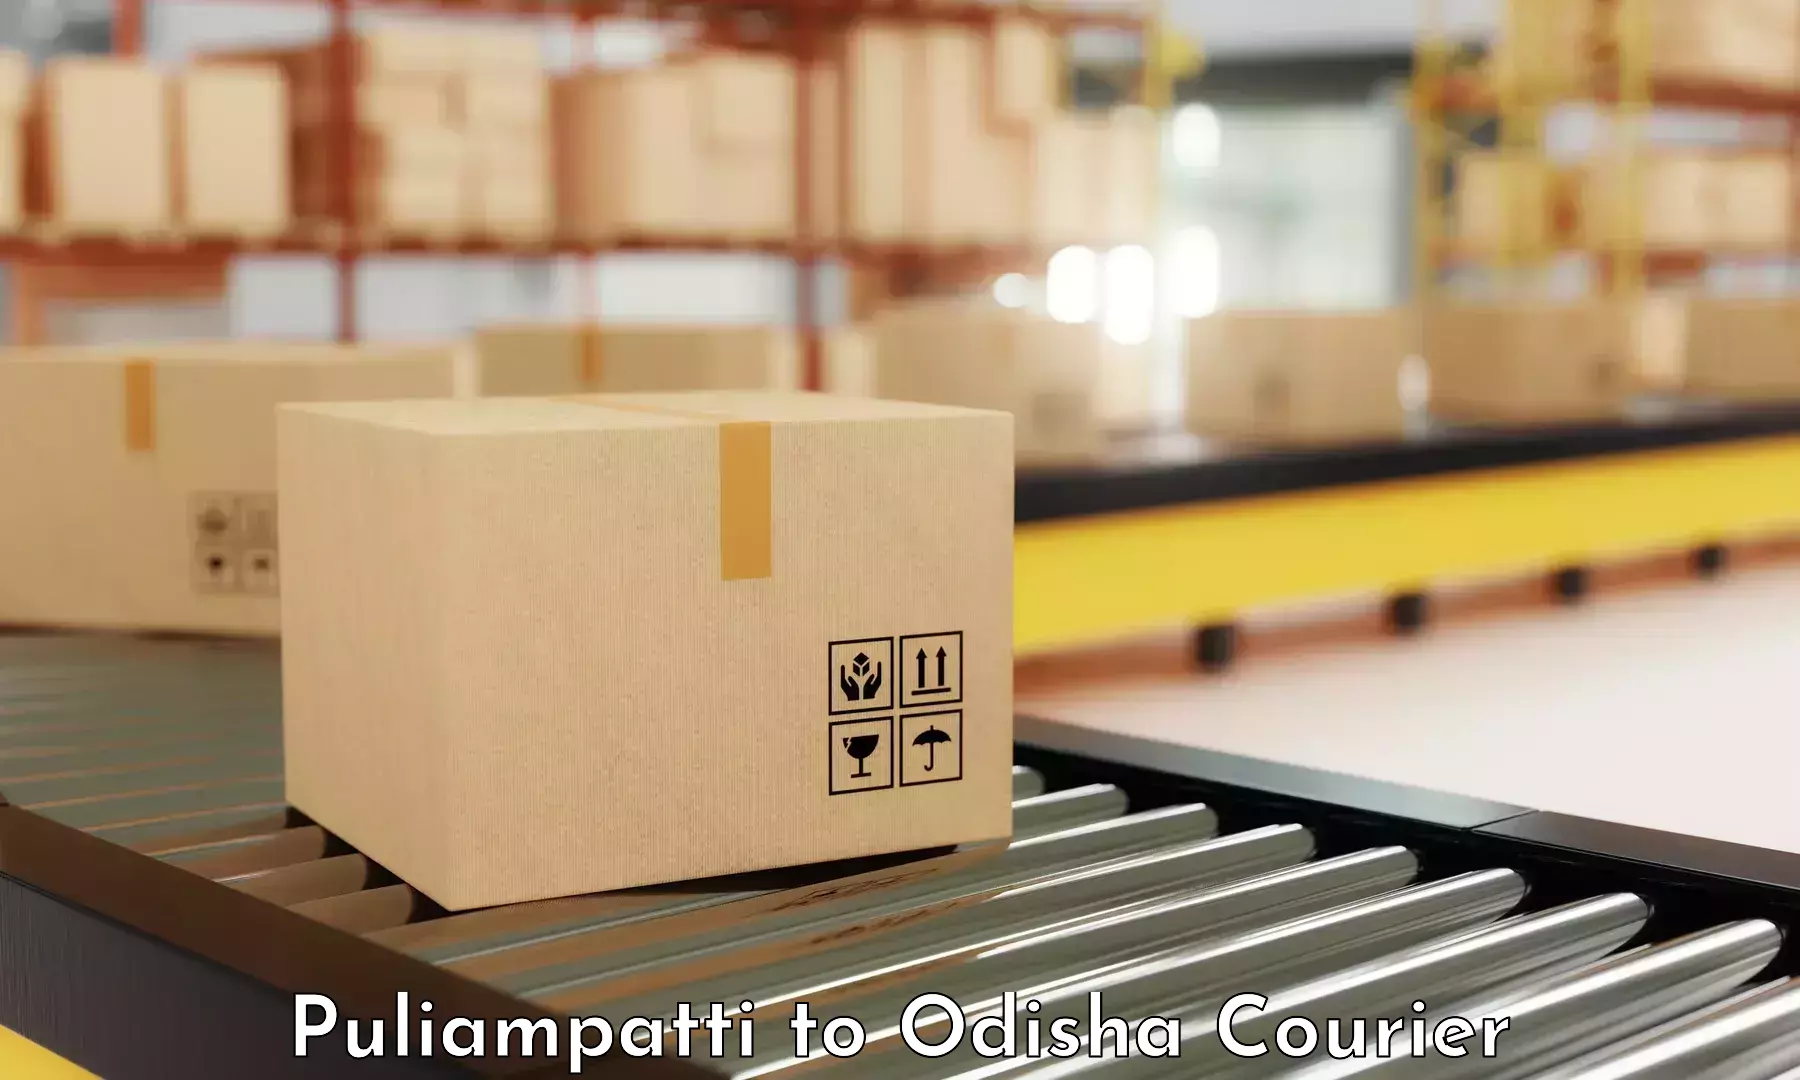 User-friendly delivery service in Puliampatti to Galleri